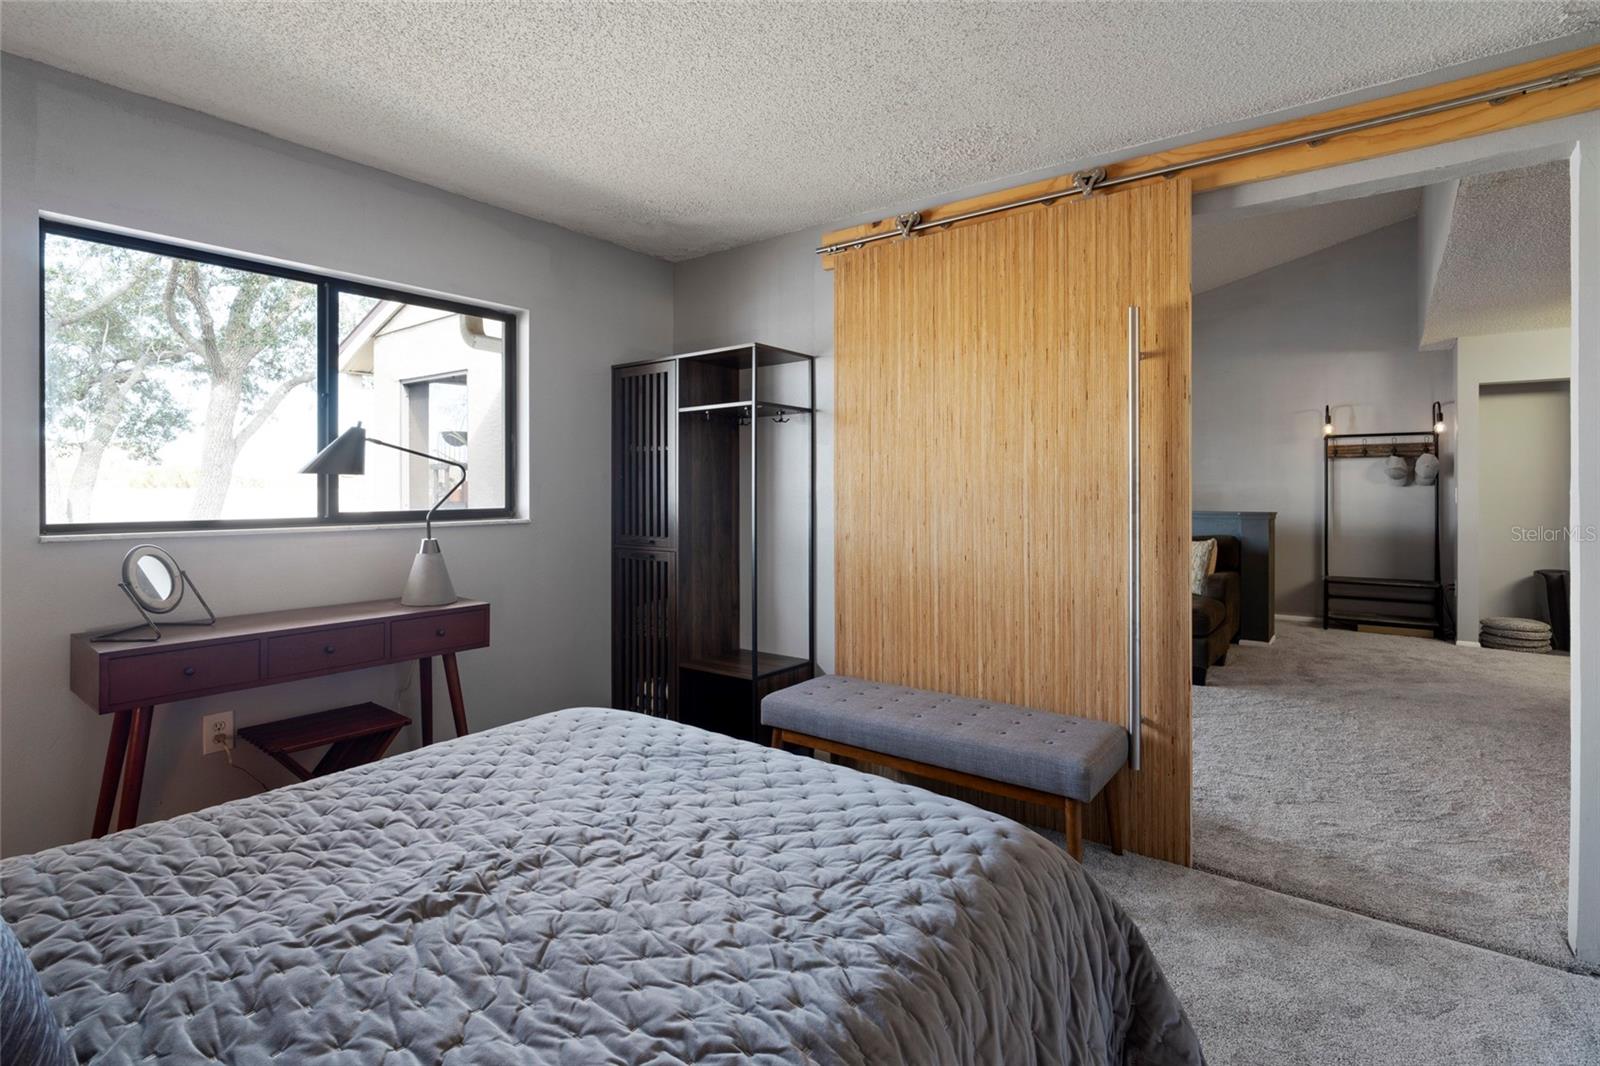 2nd Bedroom with custom sliding door